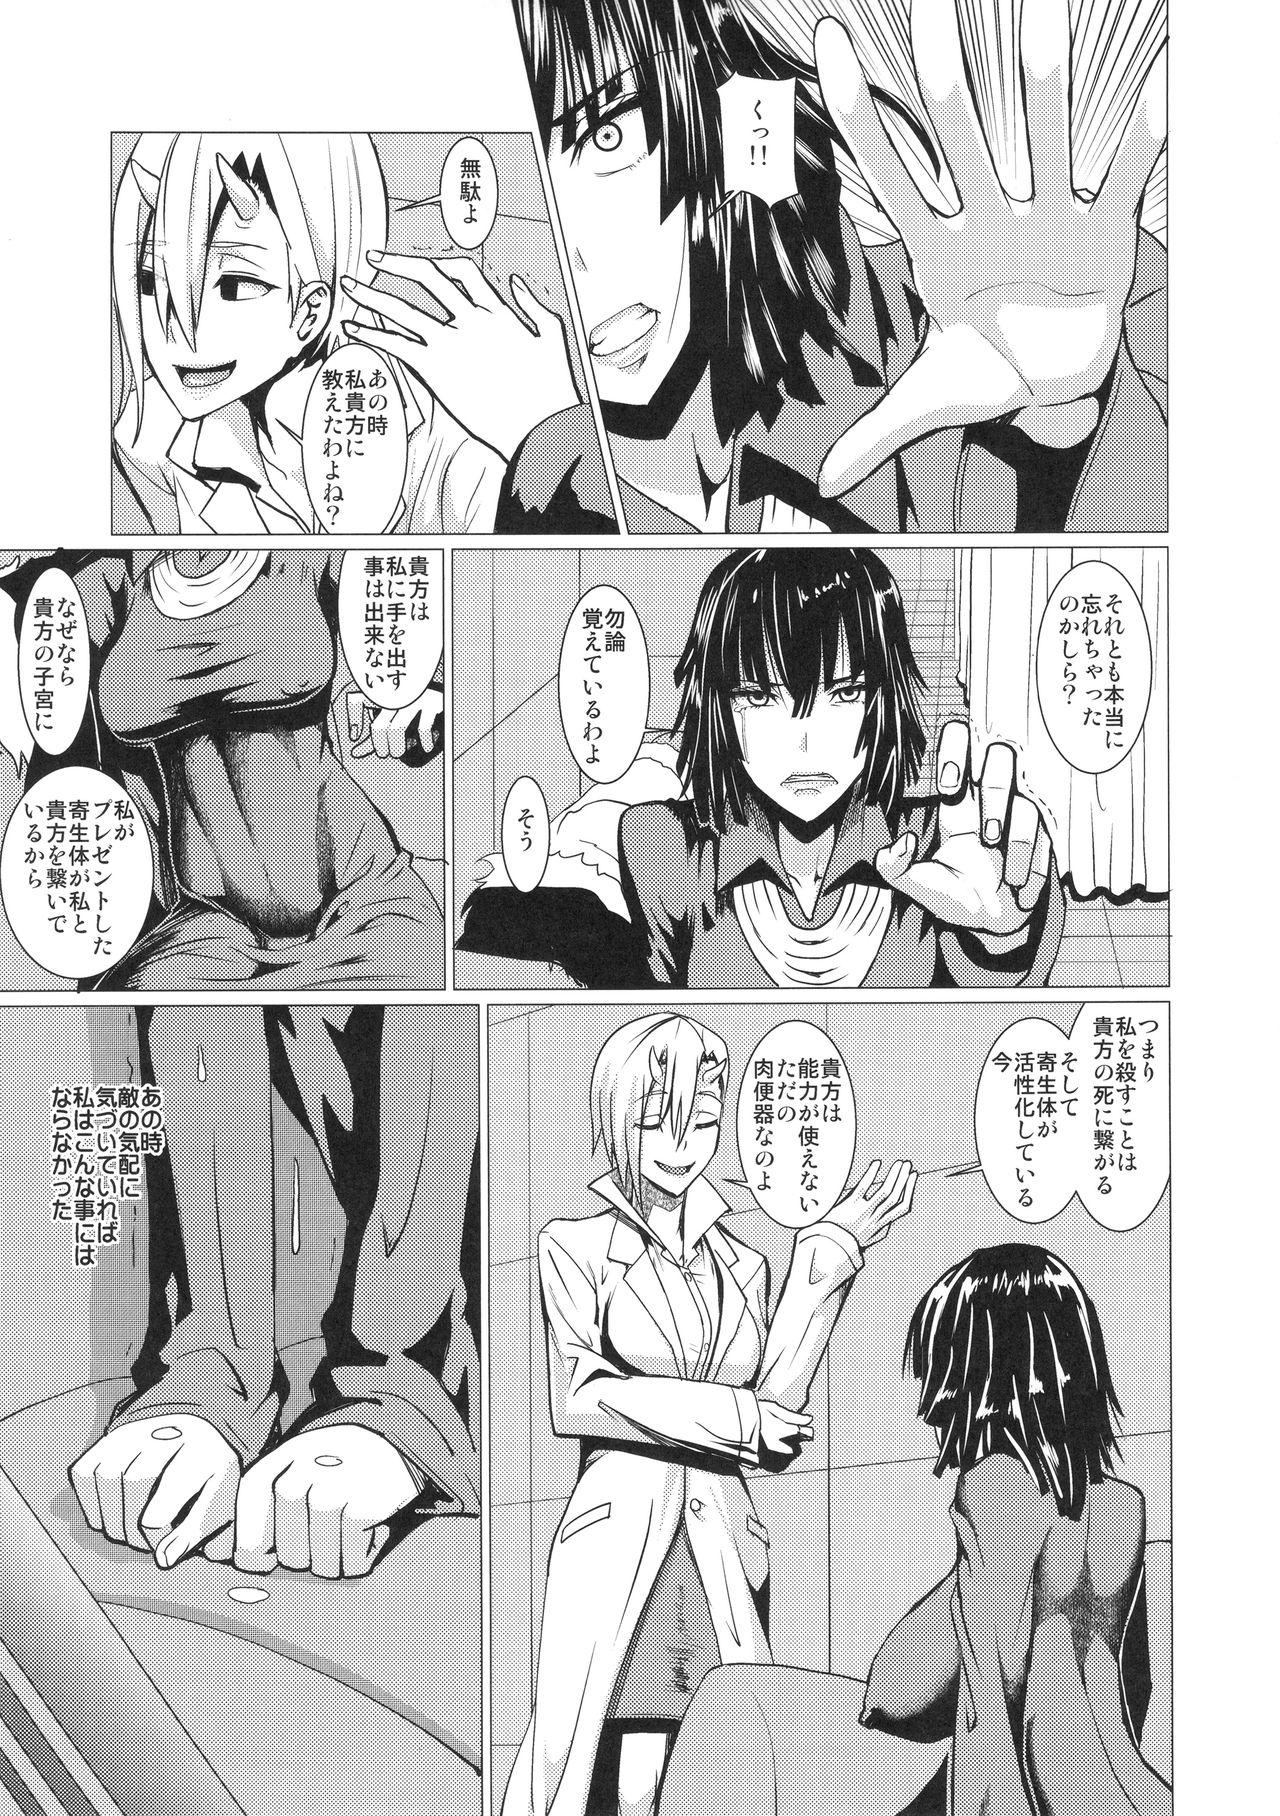 Hot Fubuki-sama no Shirarezaru Nichijou - One punch man 19yo - Page 4